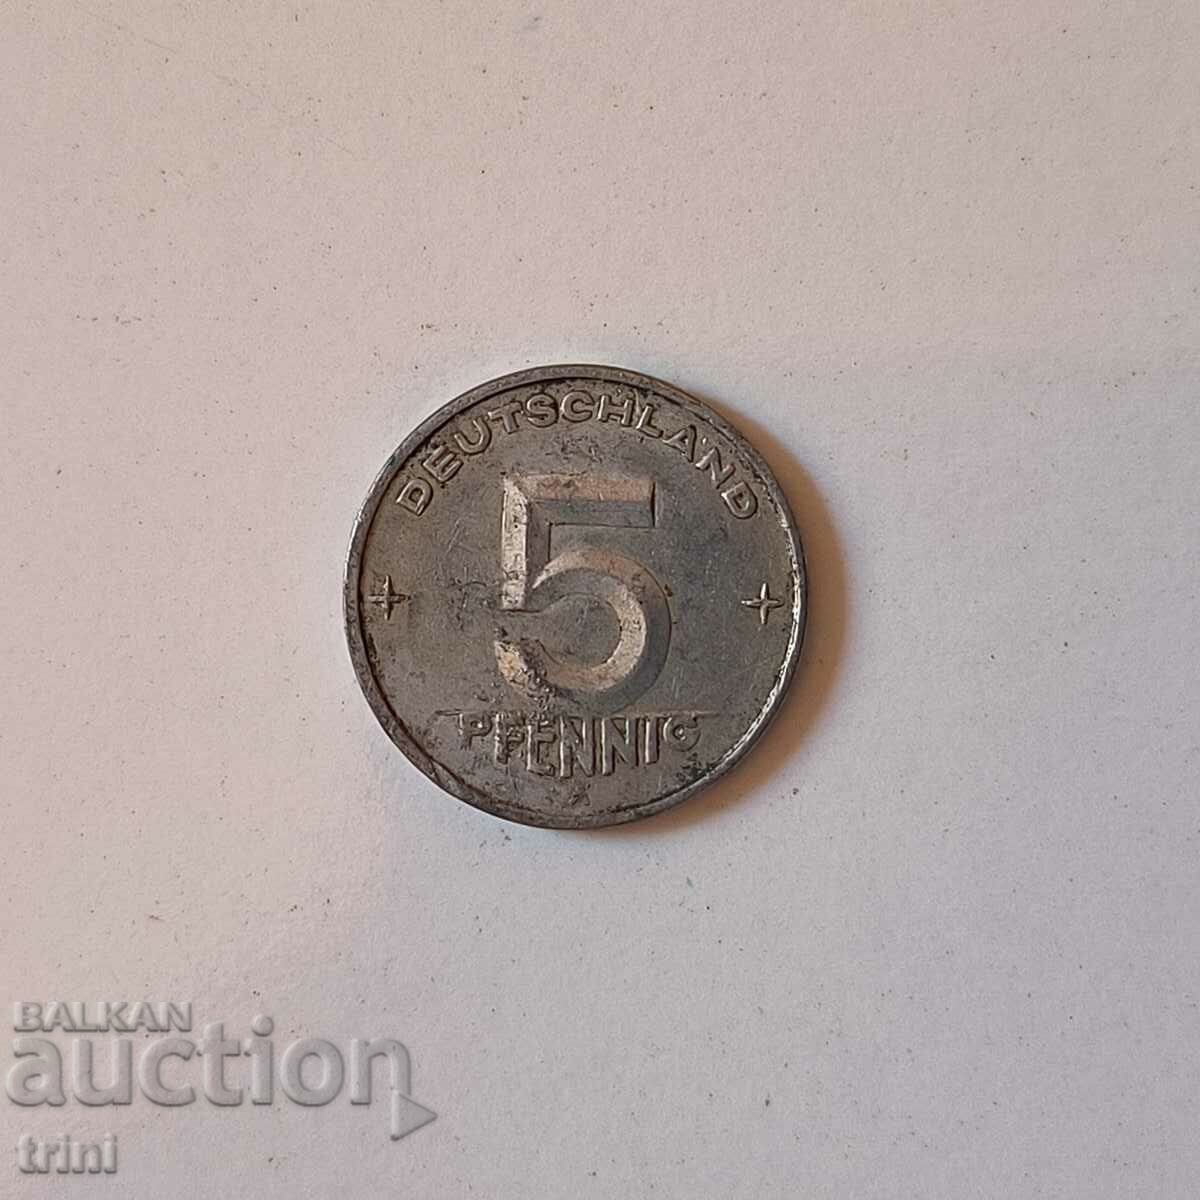 Germany GDR 5 pfennig 1950 year b54